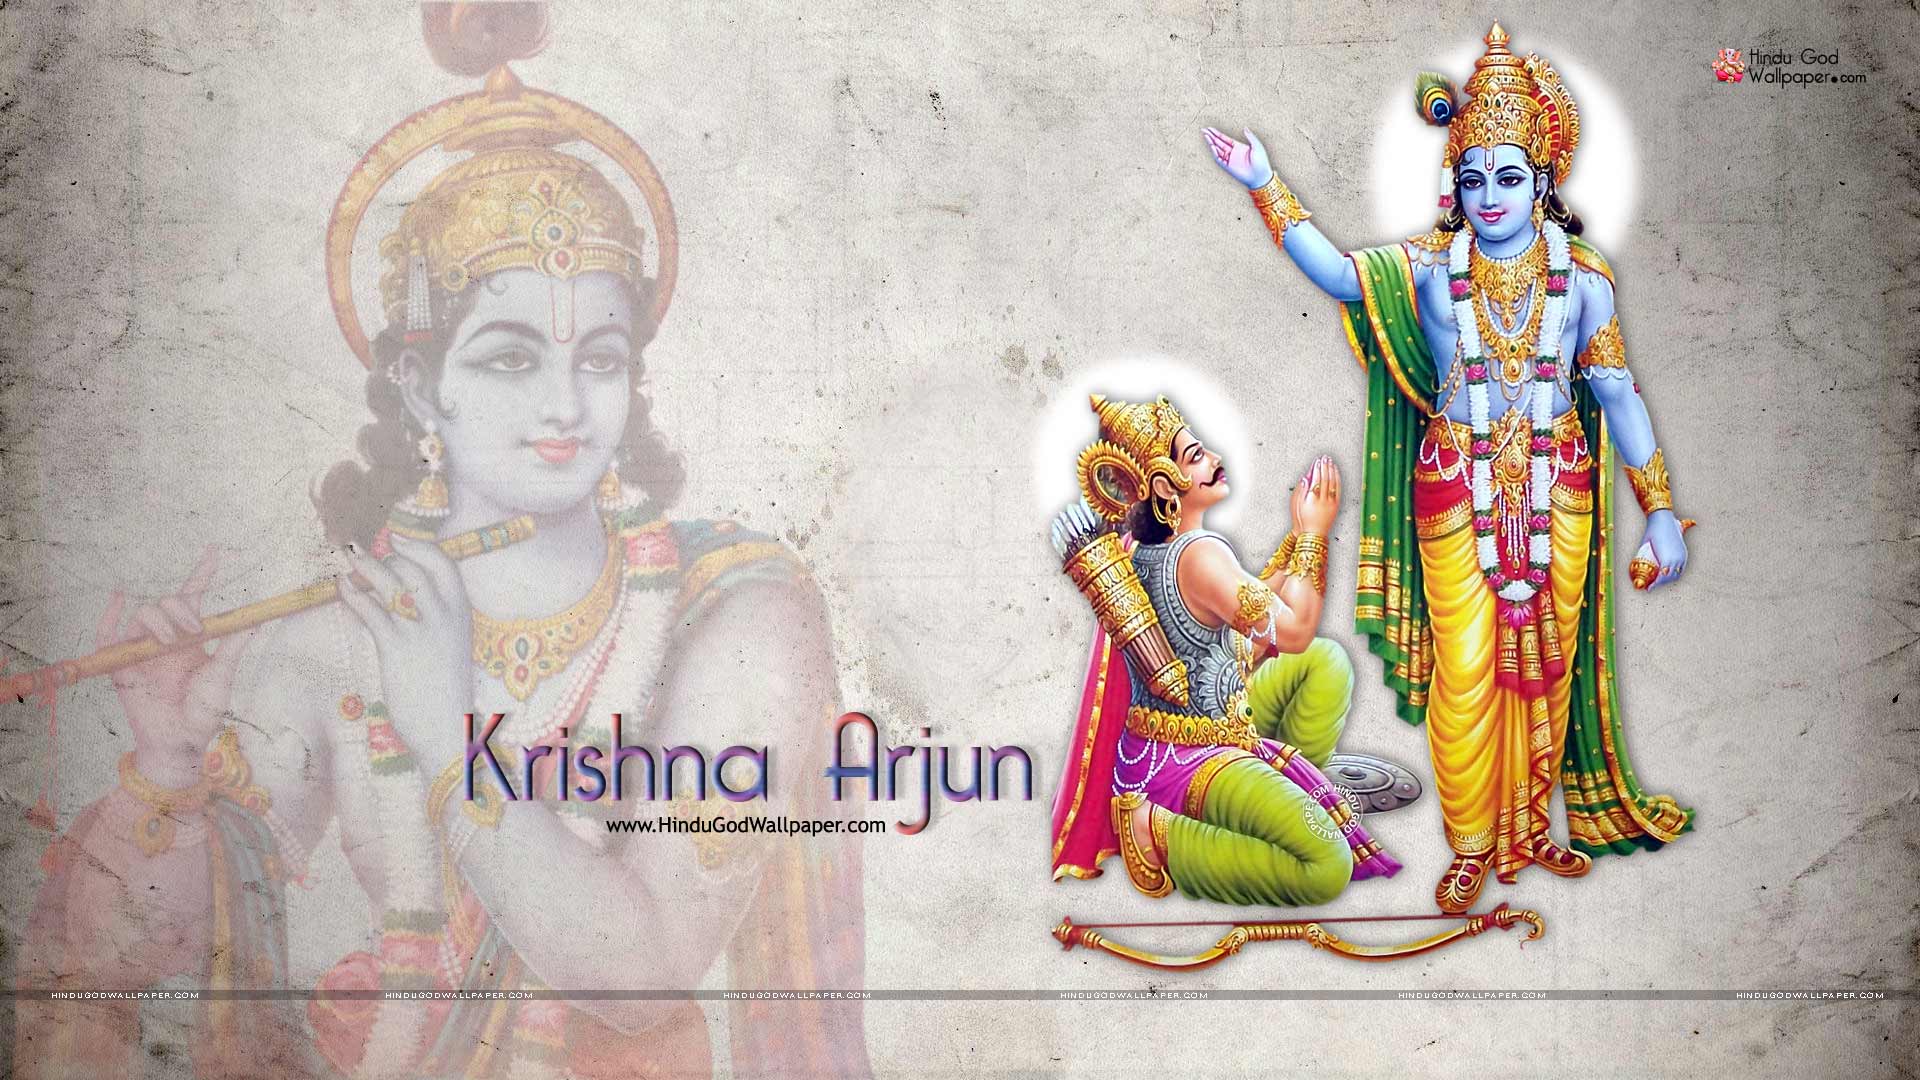 Krishna Arjuna Wallpapers Full Size Free Download